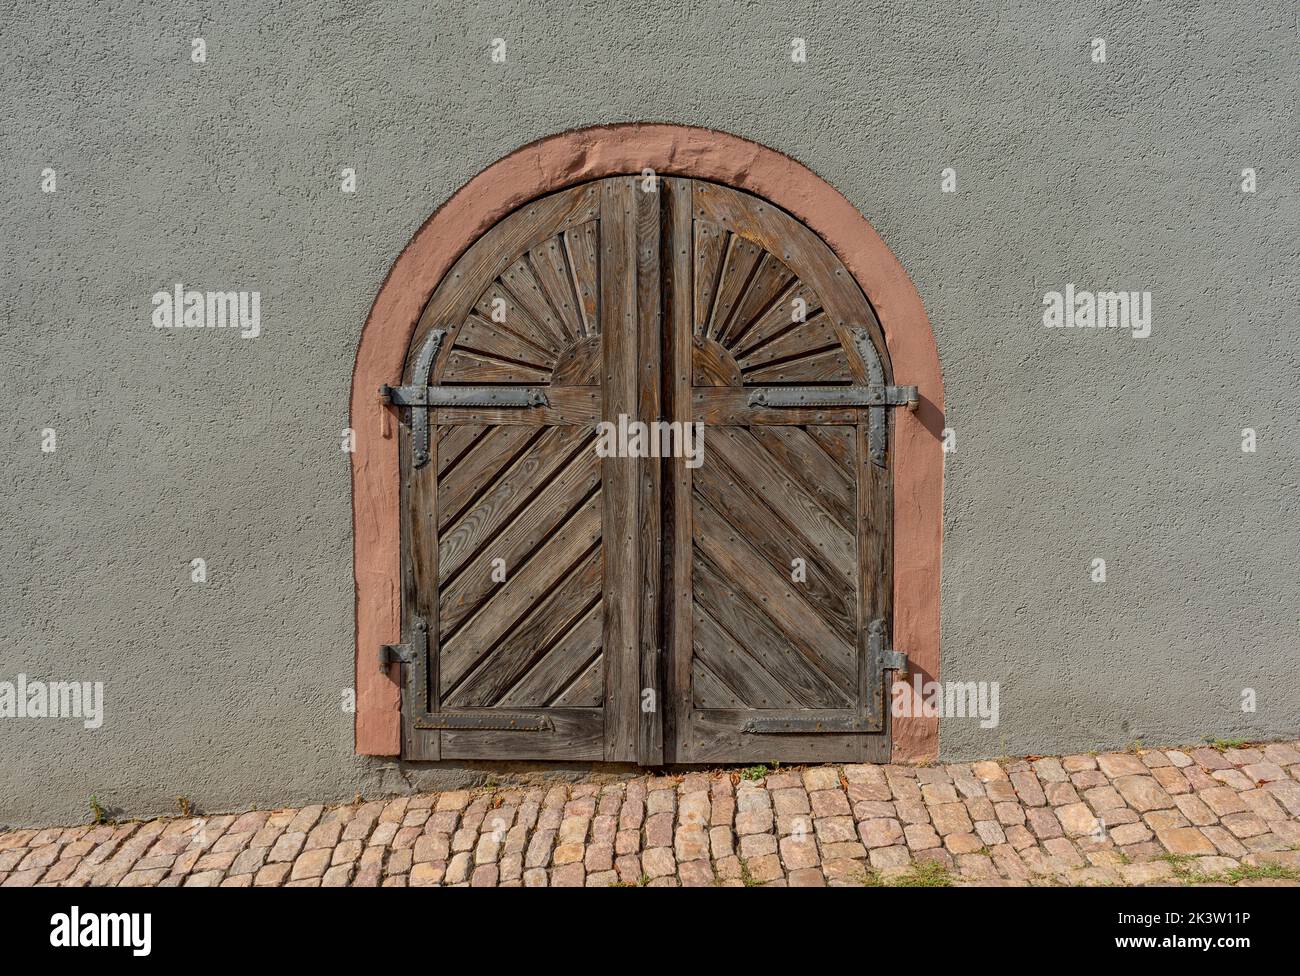 Puerta histórica vista en Bad Wimpfen, una ciudad balneario histórica en el distrito de Heilbronn en la región de Baden-Wuerttemberg, al sur de Alemania Foto de stock